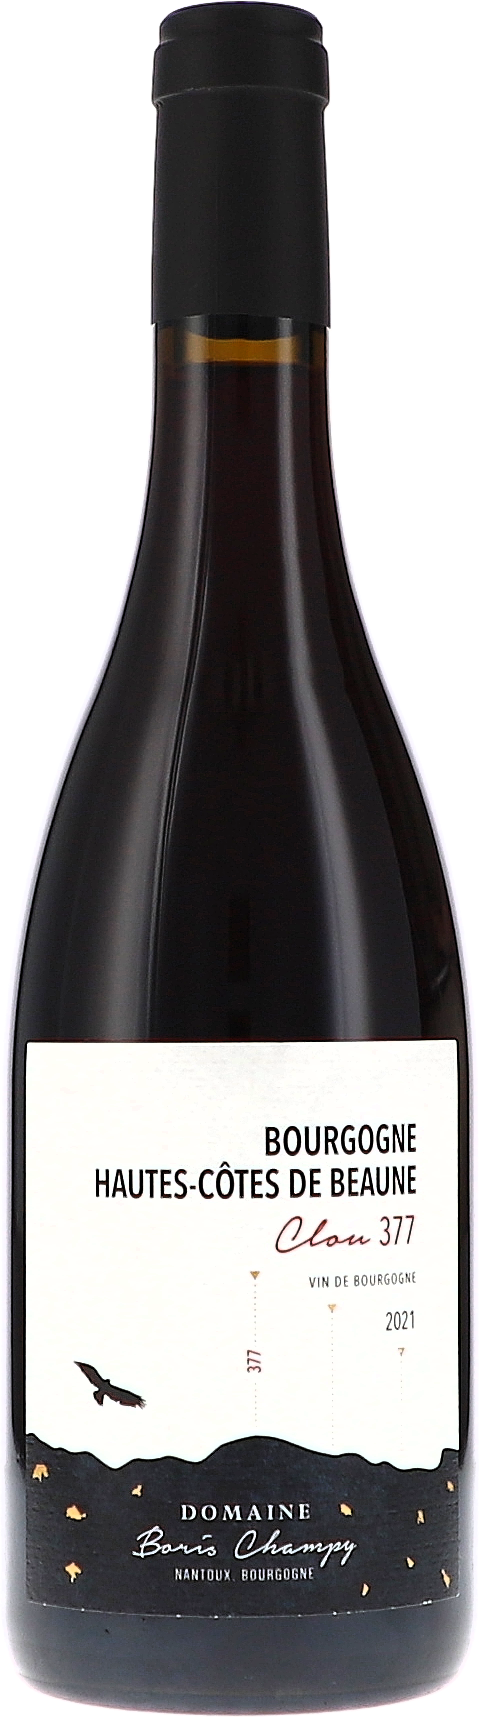 Bourgogne Hautes-Côtes de Beaune Rouge, Clou 377 AOP